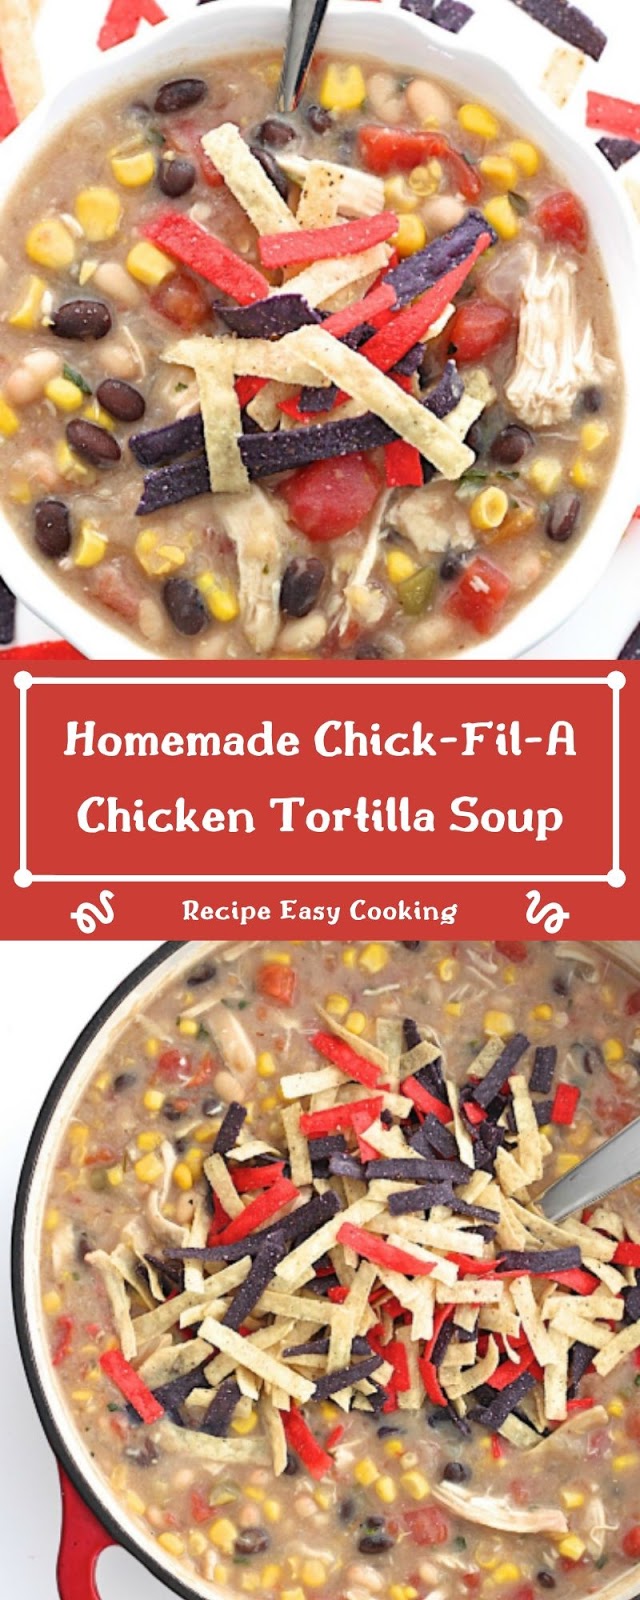 Homemade Chick-Fil-A Chicken Tortilla Soup